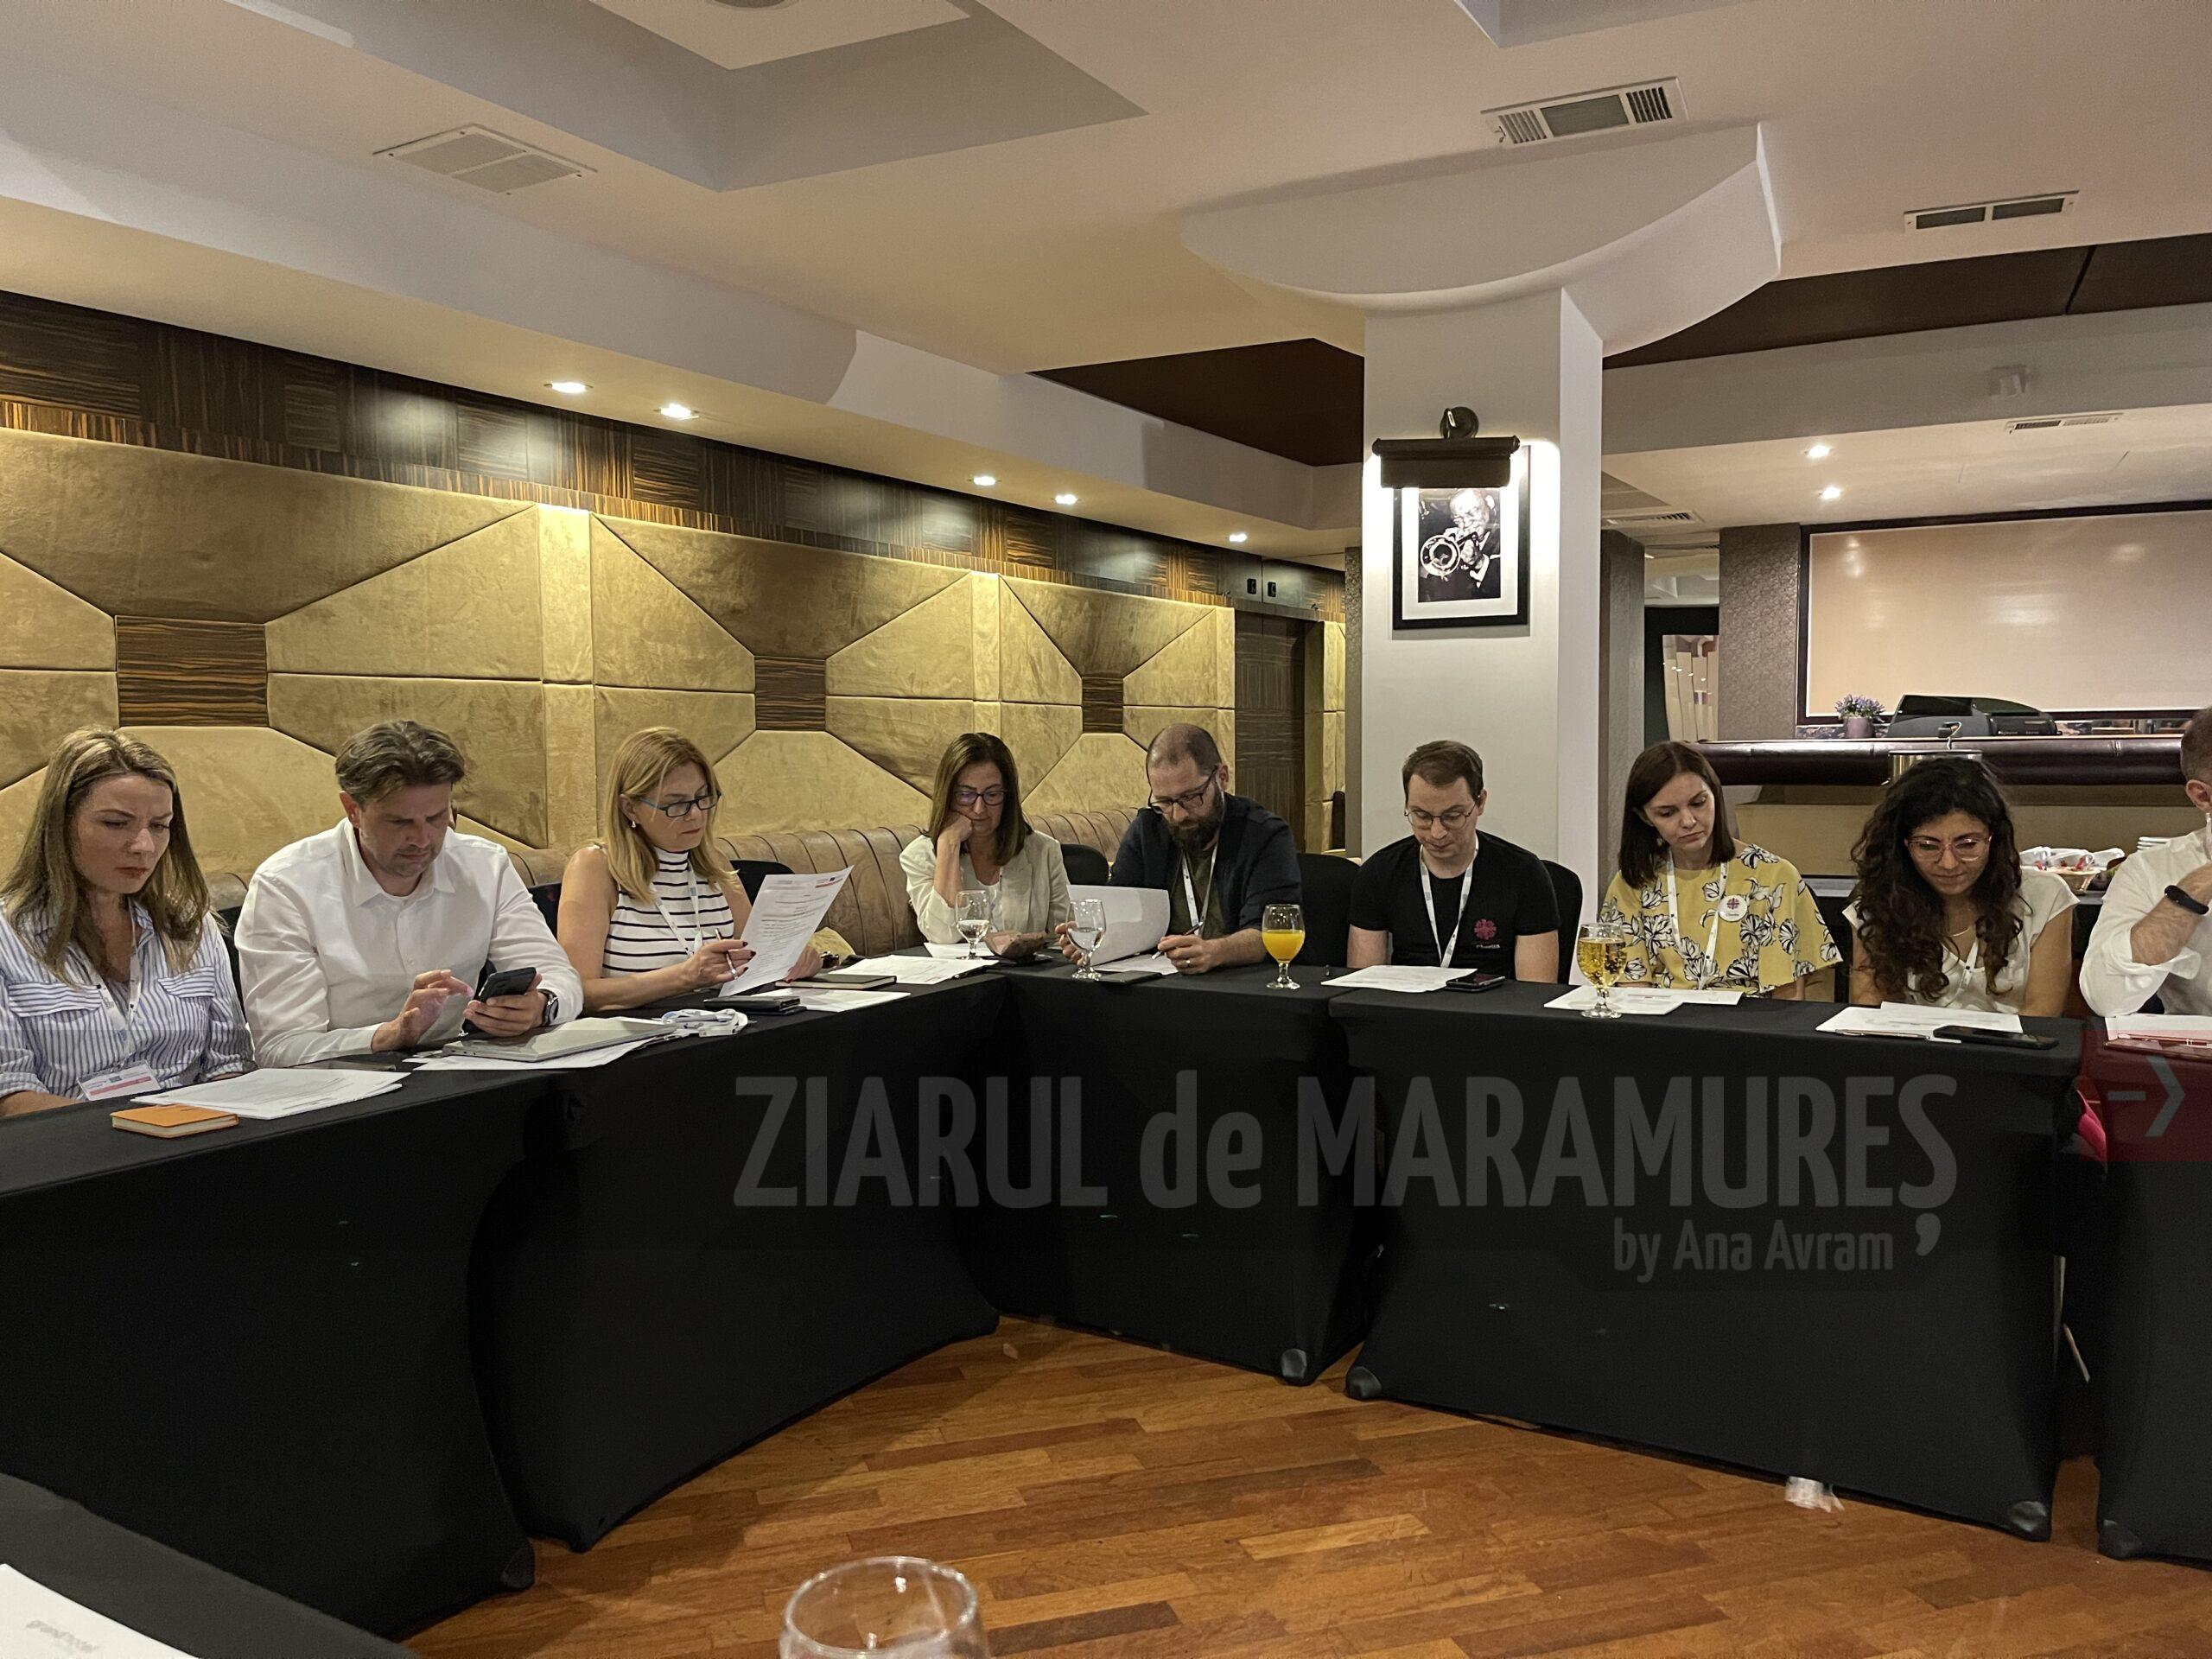 Județul Maramureș prezent la prima întâlnire transnațională din cadrul proiectului SIRM